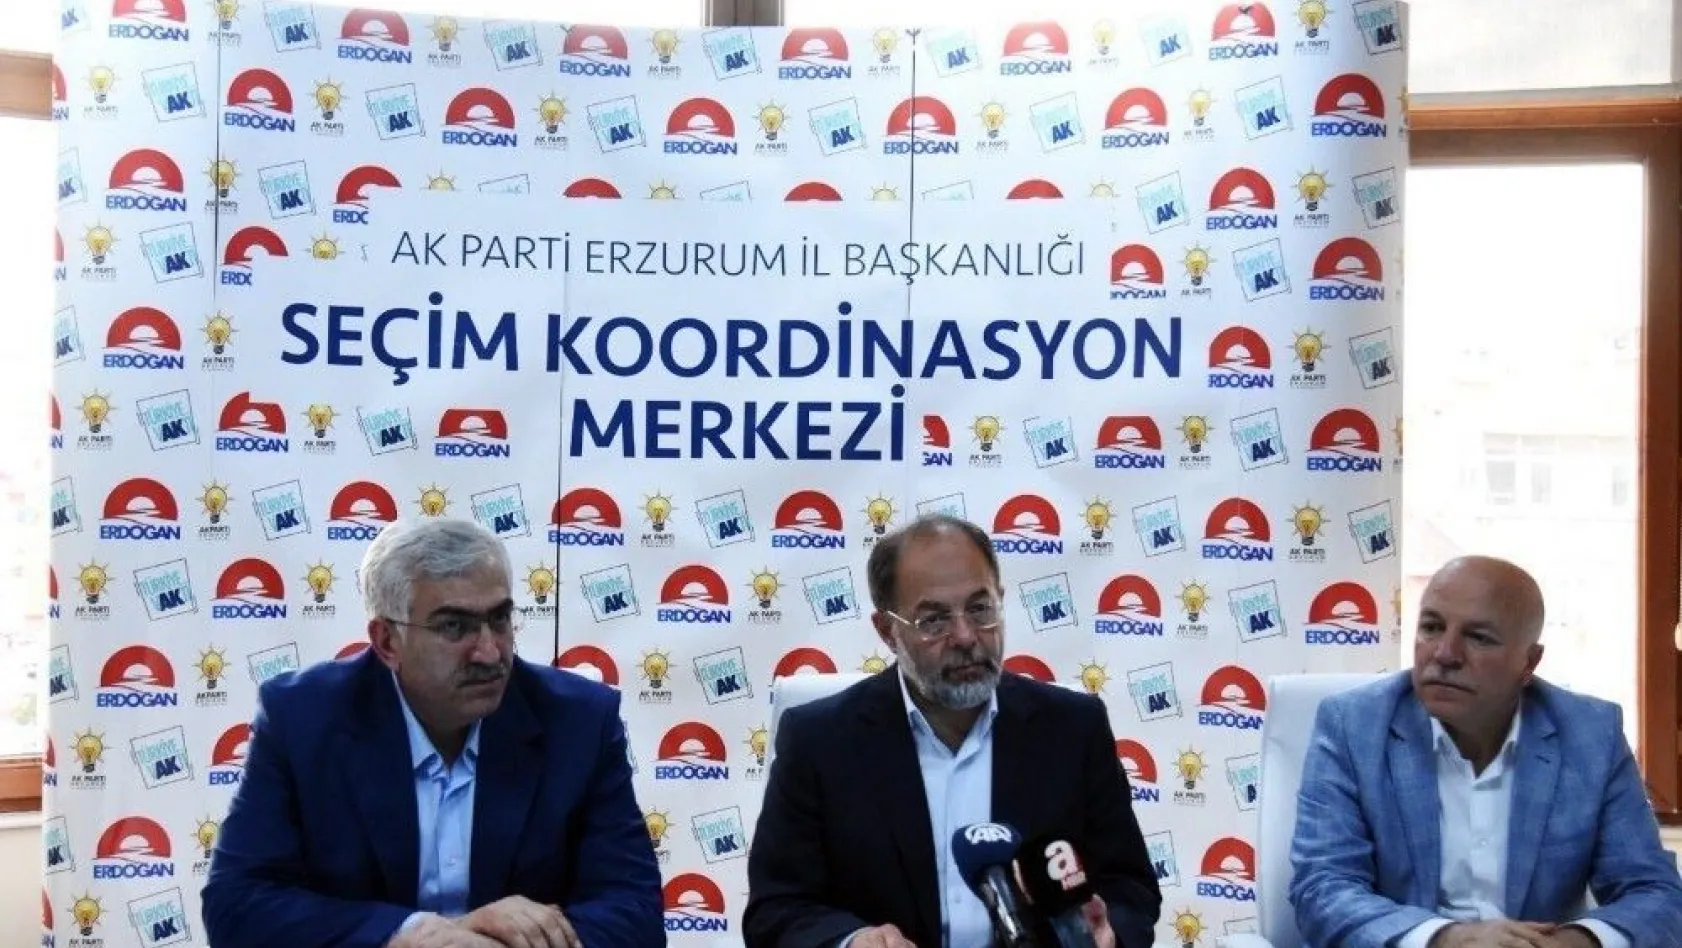 Başbakan Yardımcısı Akdağ: 'Karaçoban'daki 2 kişinin öldüğü olayın seçimle bağlantısı yoktur'
